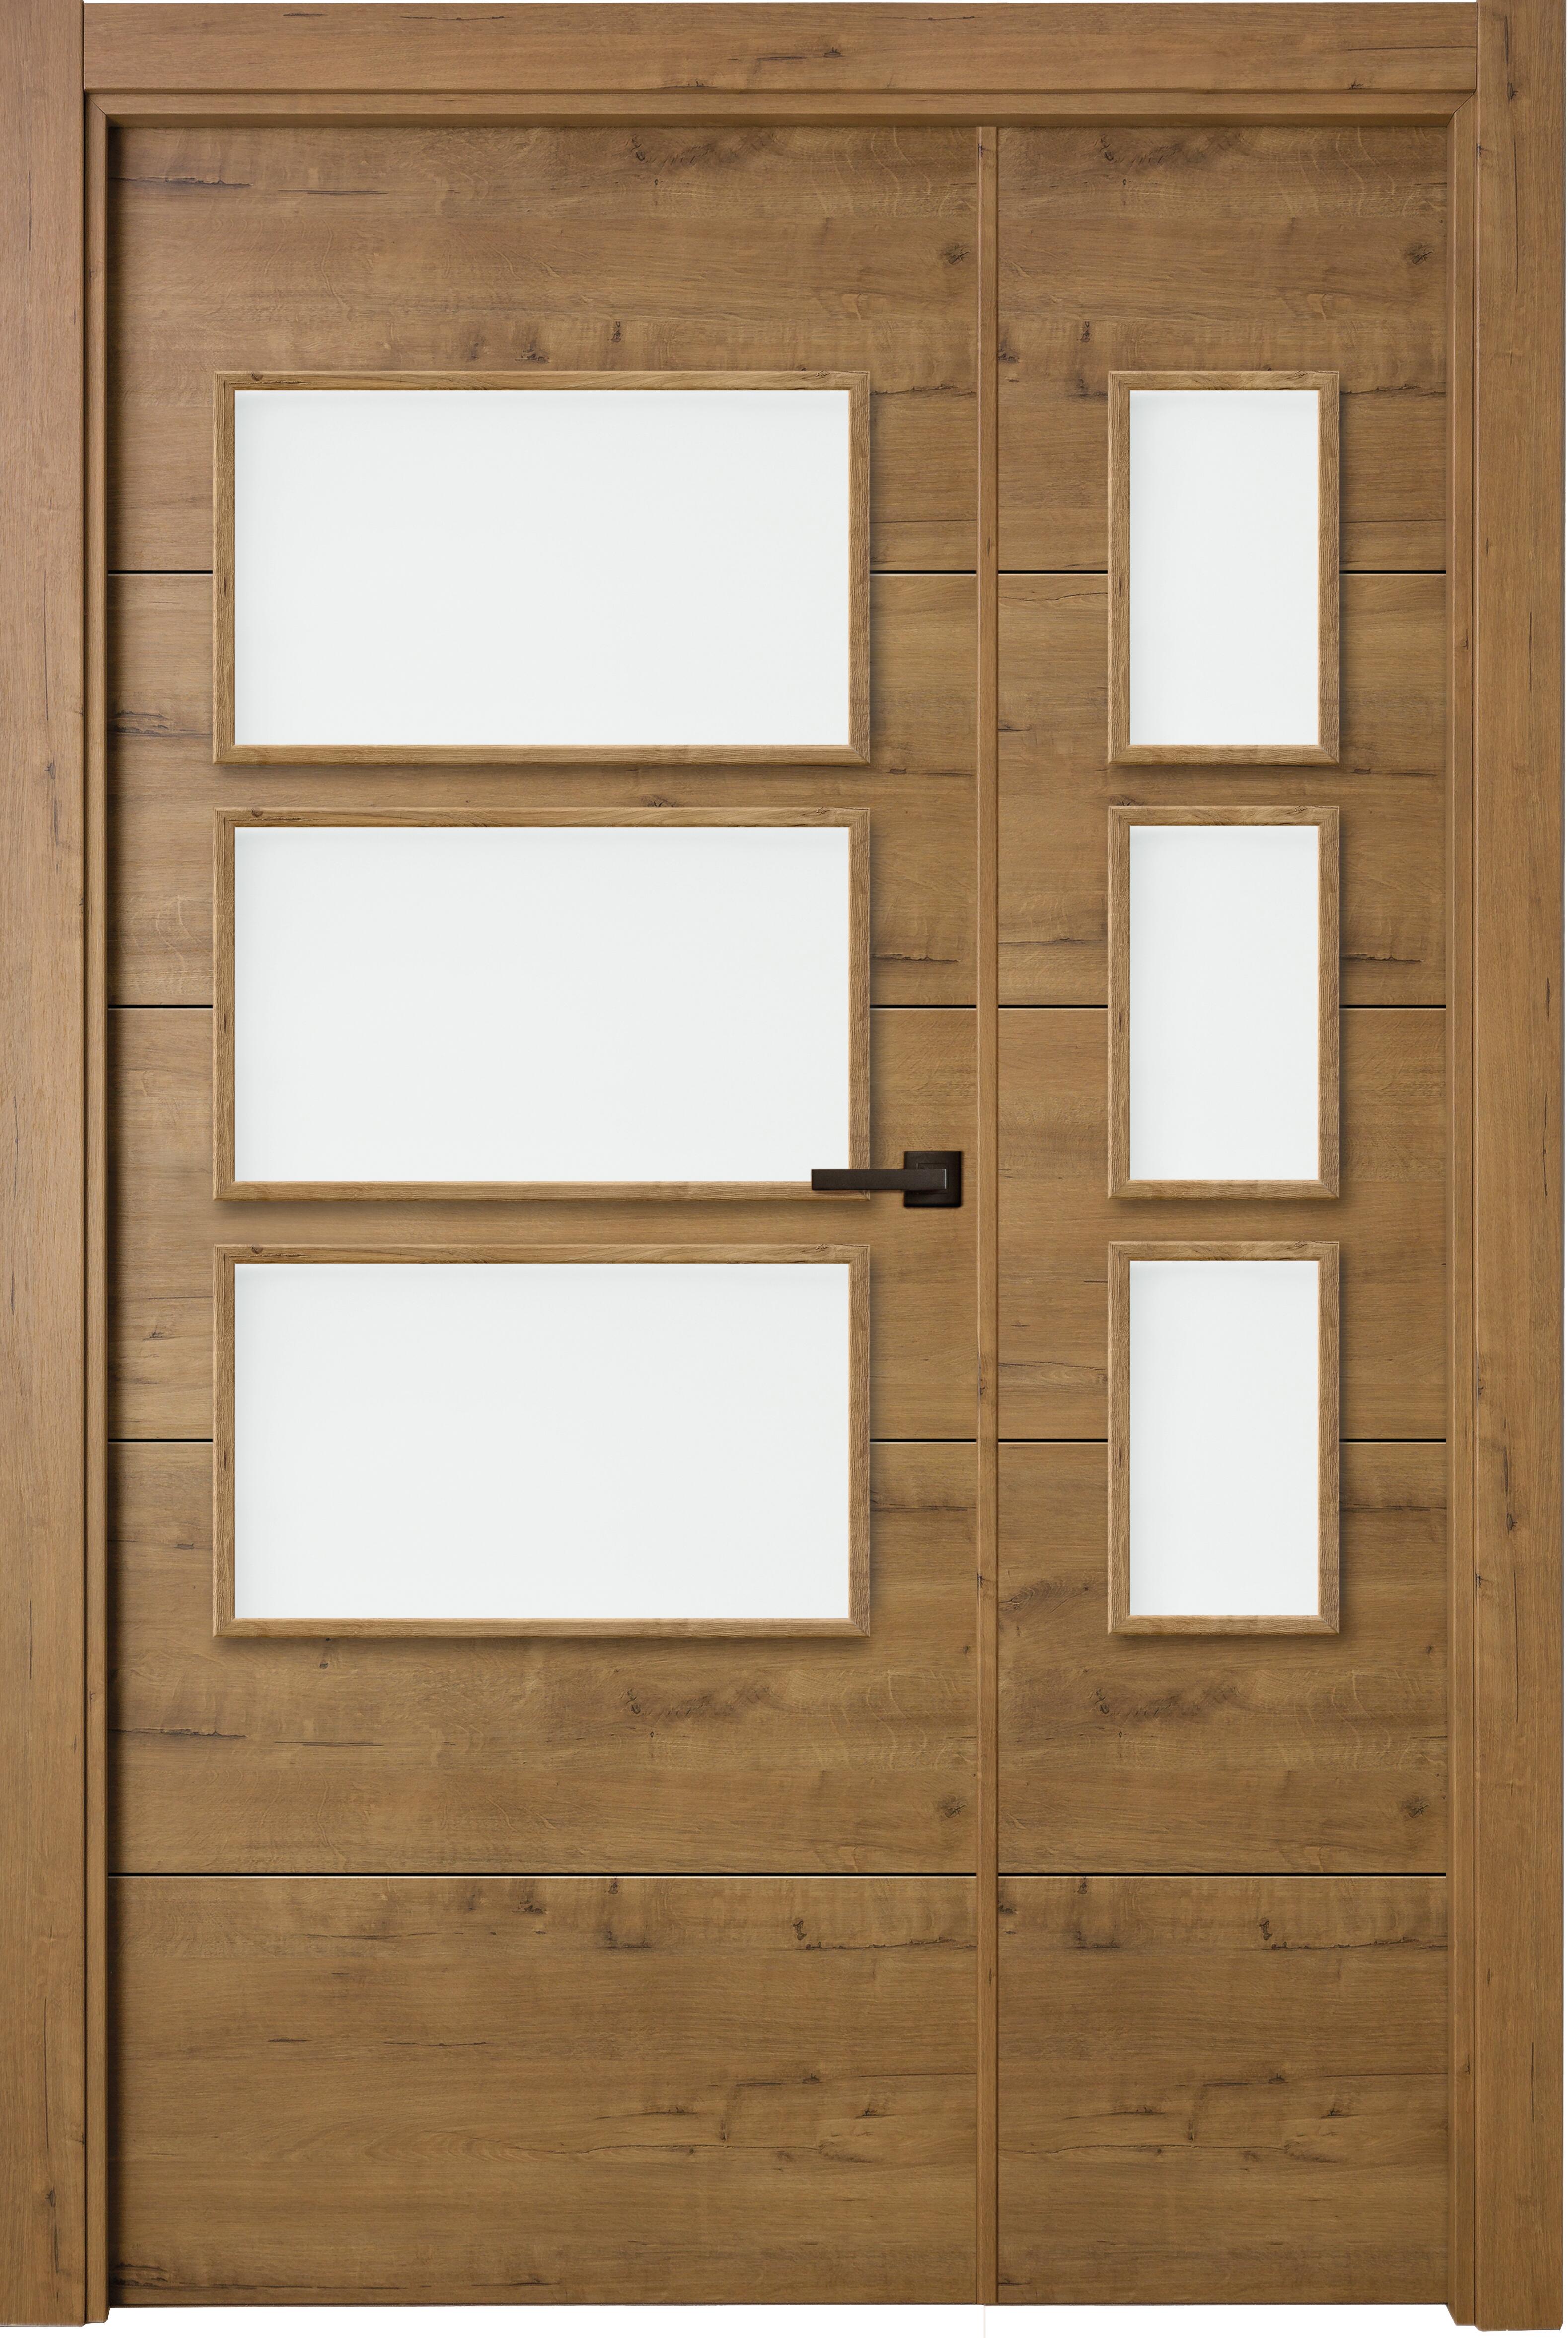 Puerta berna gold doble con vidriera de apertura derecha de 115 x 203 x 11 cm